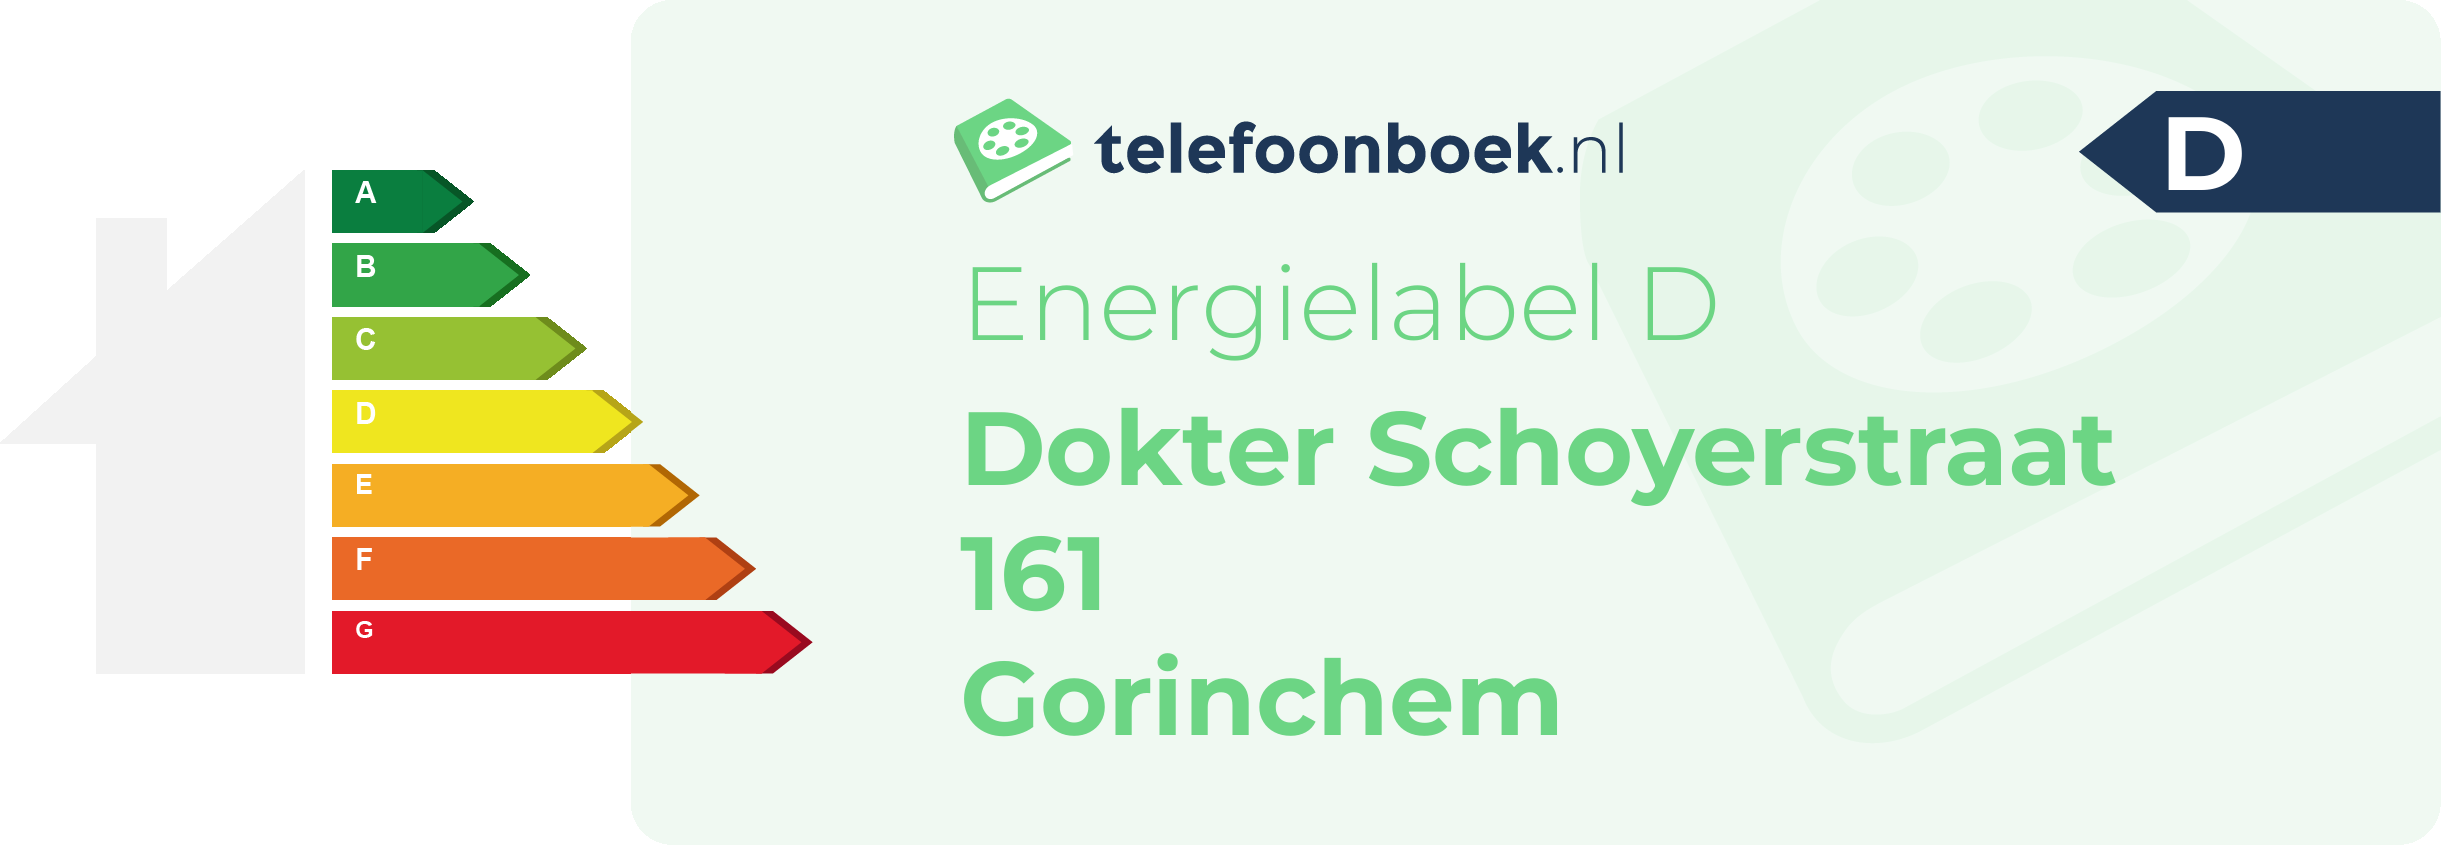 Energielabel Dokter Schoyerstraat 161 Gorinchem